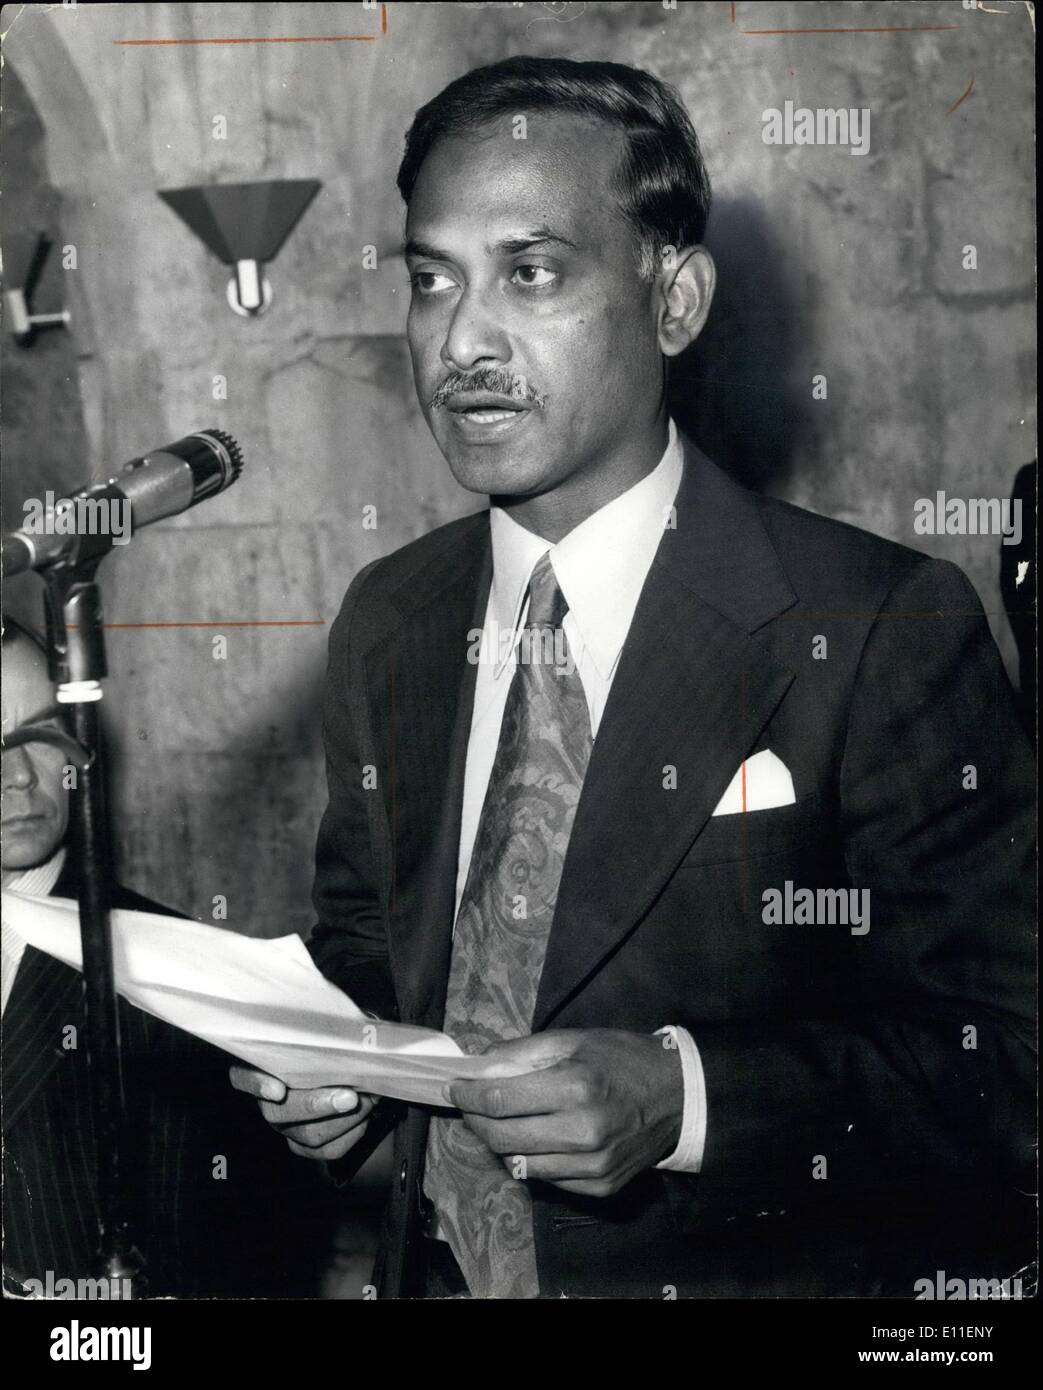 Juin 06, 1977 - PRÉSIDENT DU BANGLADESH ASSISTE À GULLDHALL DÉJEUNER. S.e. MAIRE GÉNÉRAL LAUR RAHMAN, Président de la République populaire du Bangladesh, était l'invité d'honneur cet après-midi à l'occasion d'un déjeuner donné dans le Gulldhall, Londres, Londres par l'Association de jute. PHOTO : KEYSTONE MONTRE Président Rahman rend son discours - durant le déjeuner cet après-midi. Banque D'Images